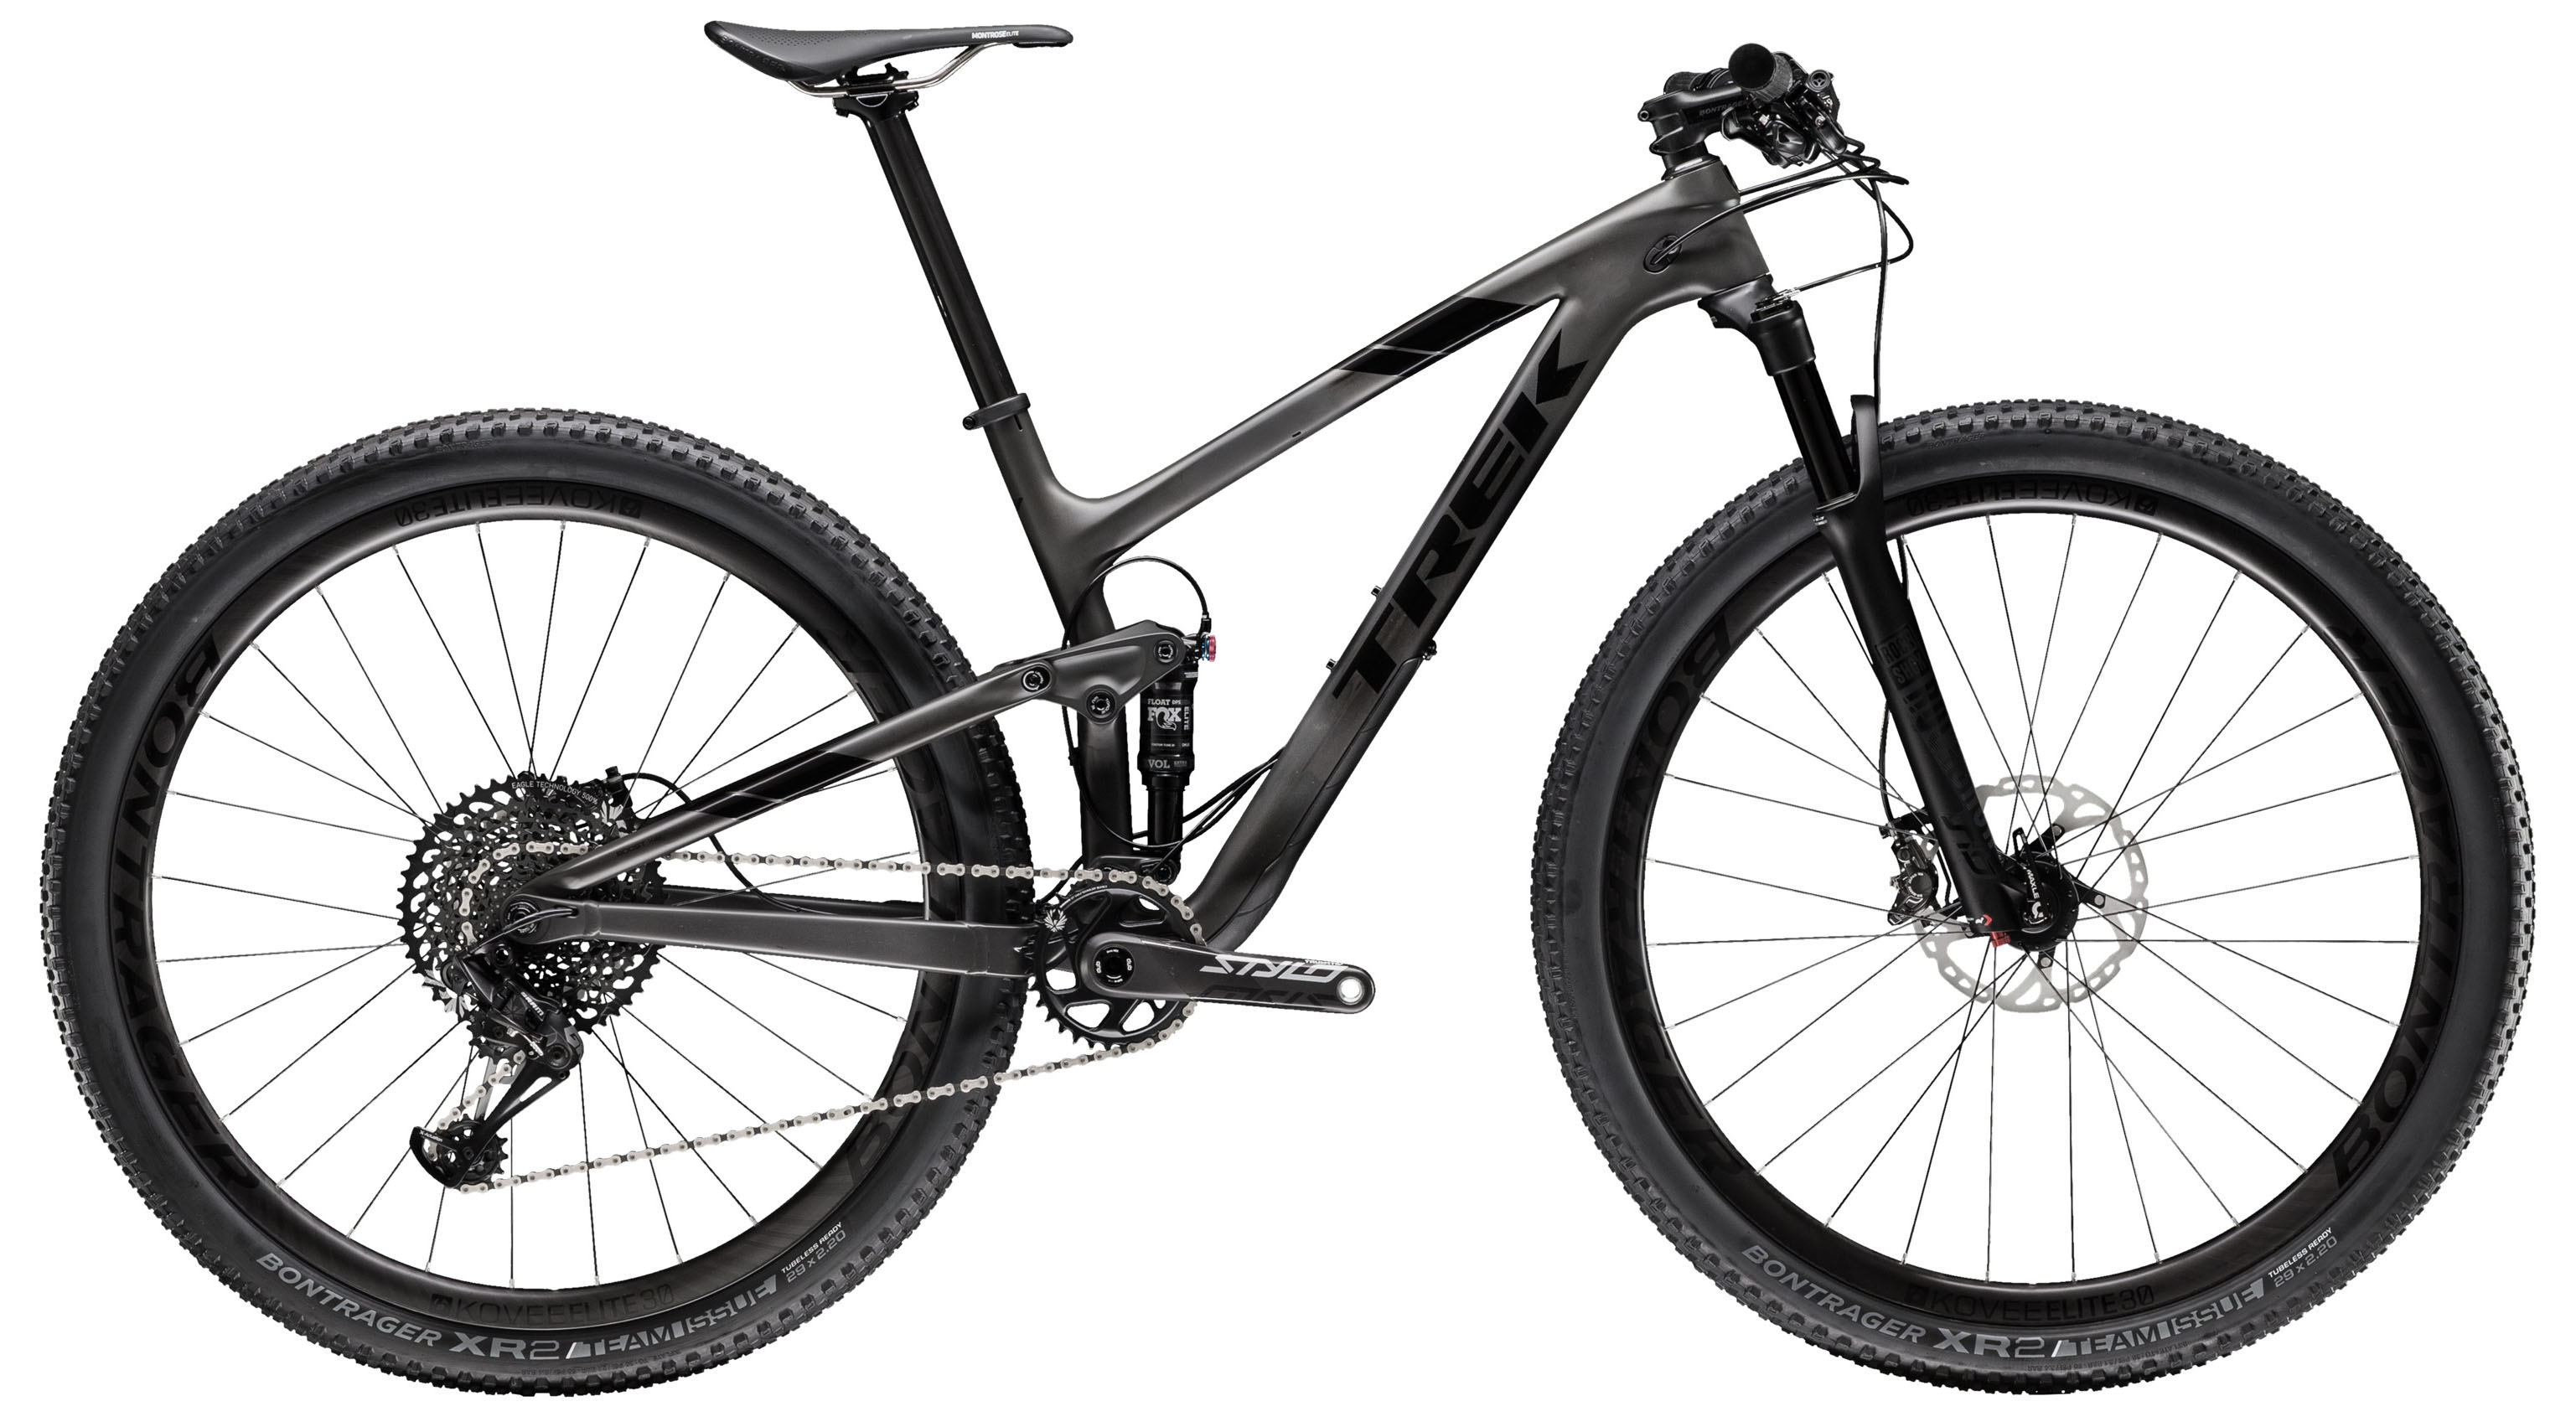  Отзывы о Двухподвесном велосипеде Trek Top Fuel 9.8 SL 29 2019